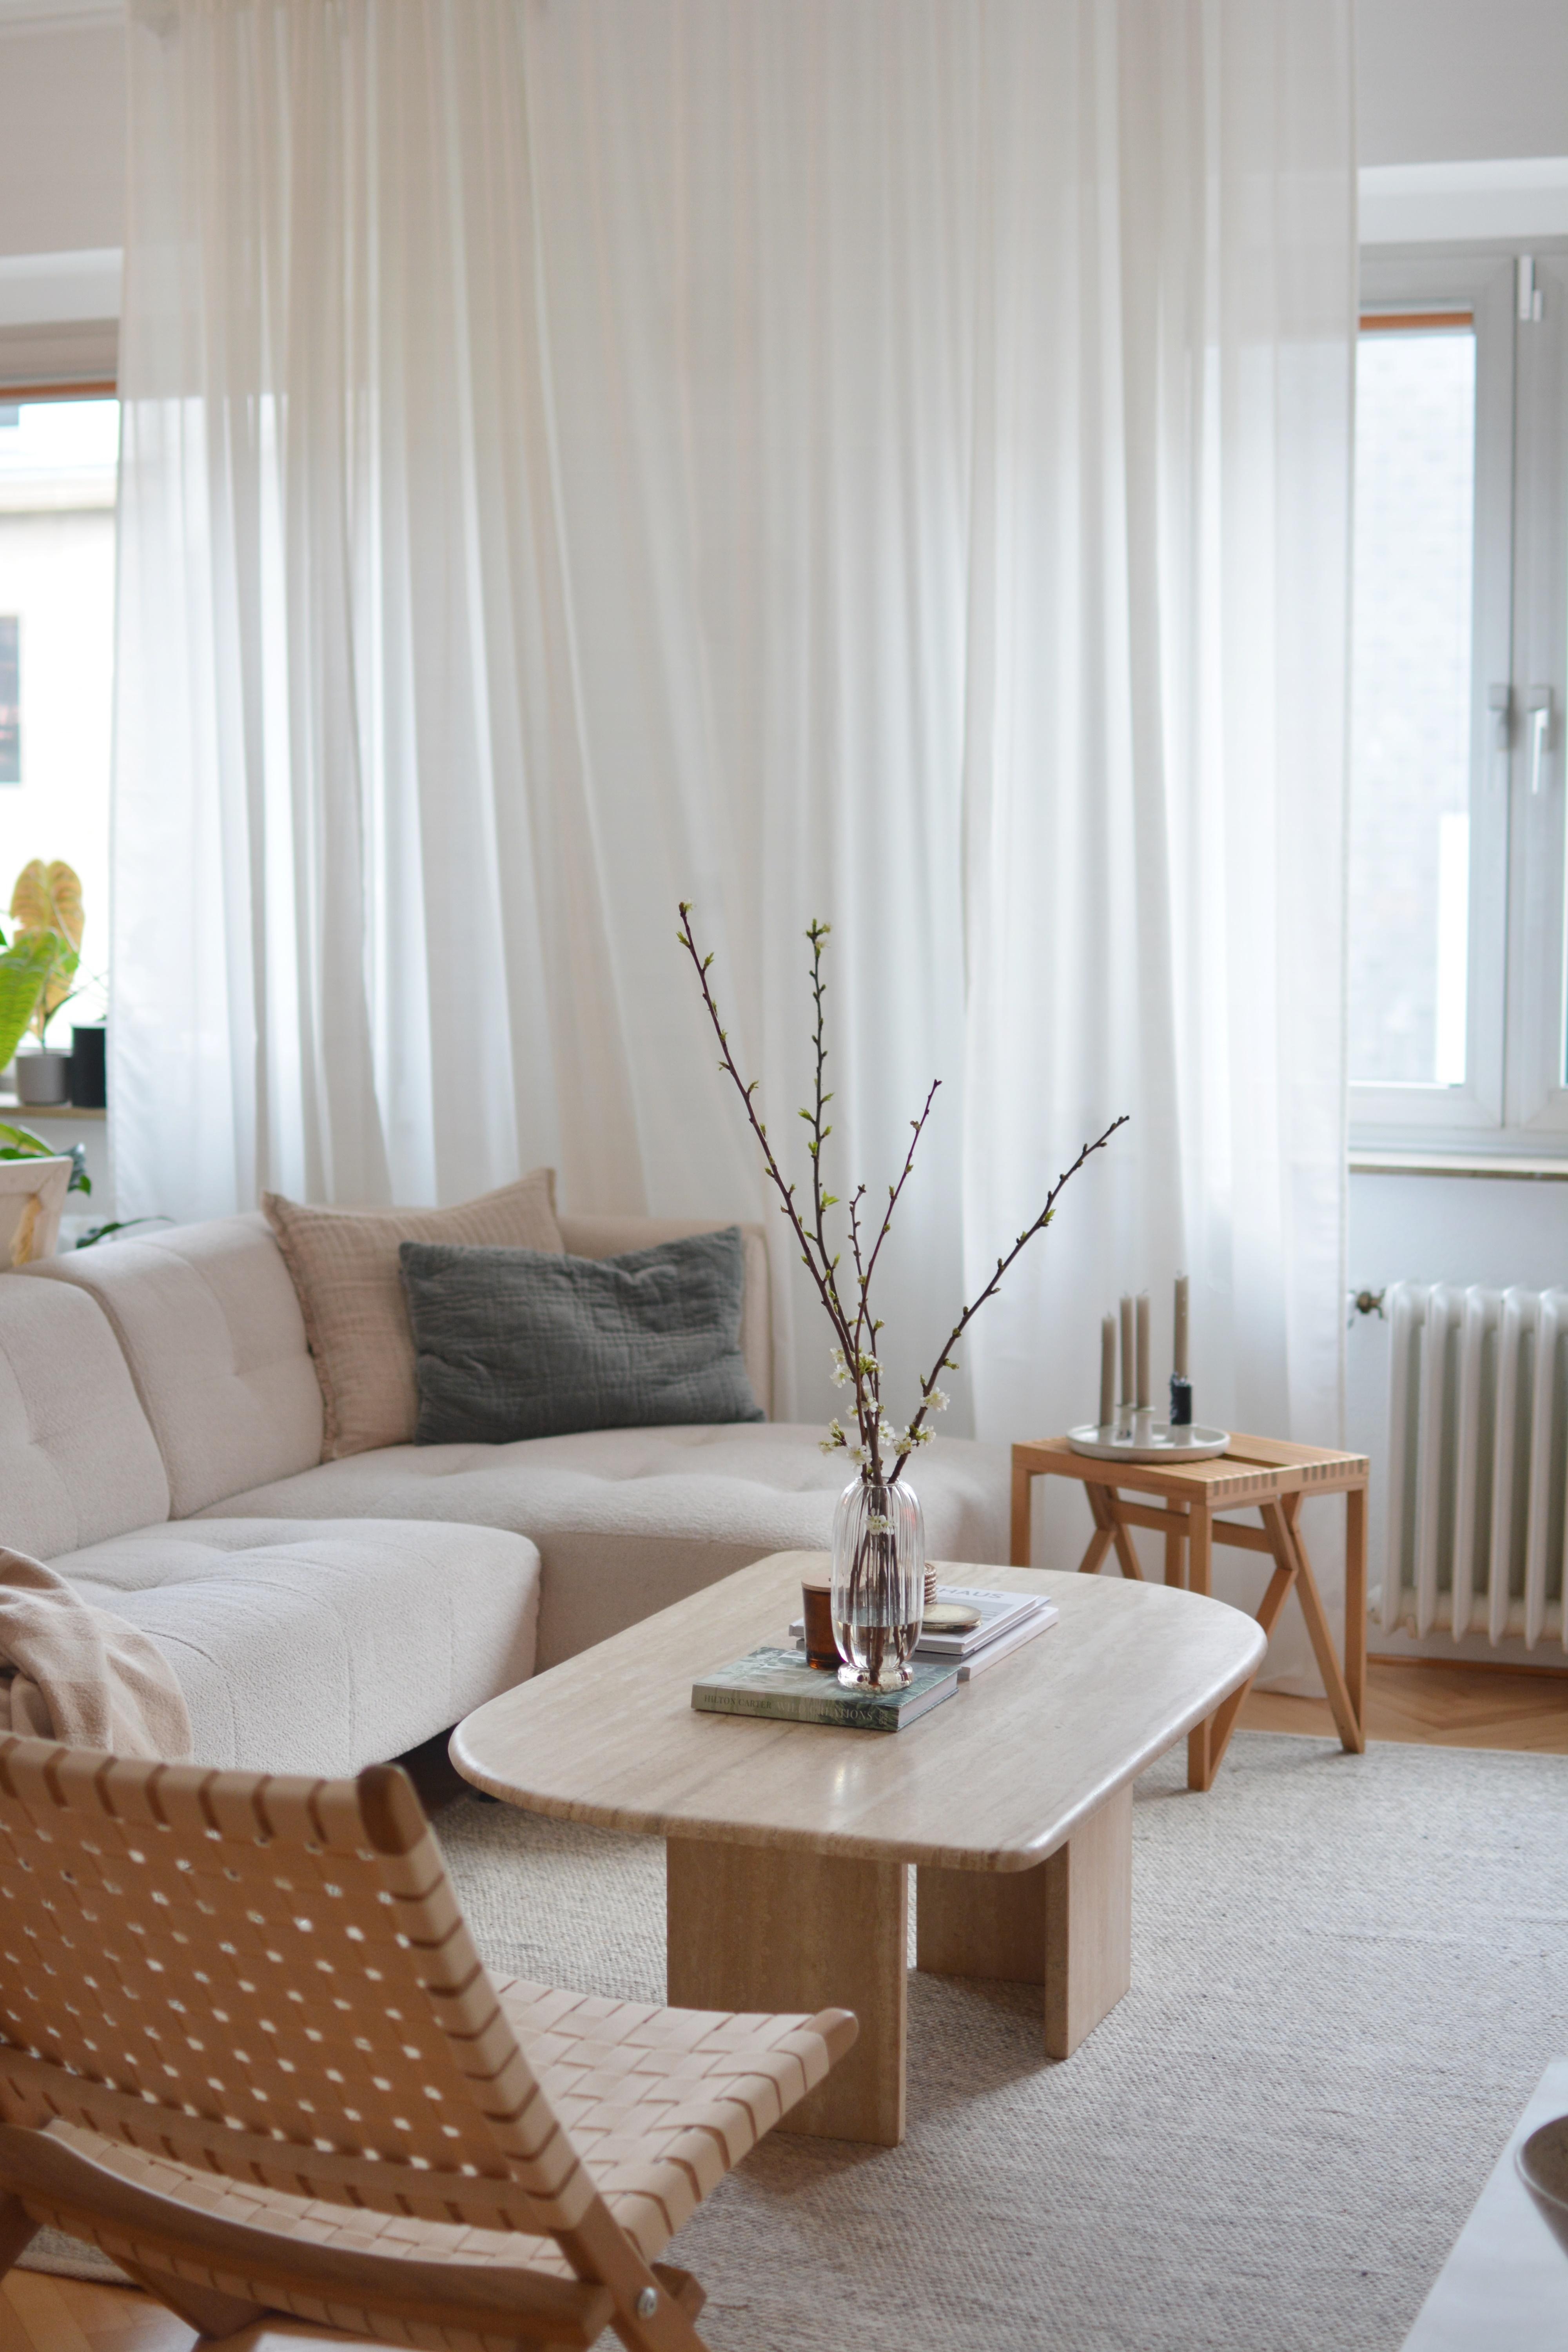 Für die letzte Wohnung zu groß, jetzt perfekt. Unser Travertintisch. 🤍

#naturstein #travertin #wohnzimmerliebe